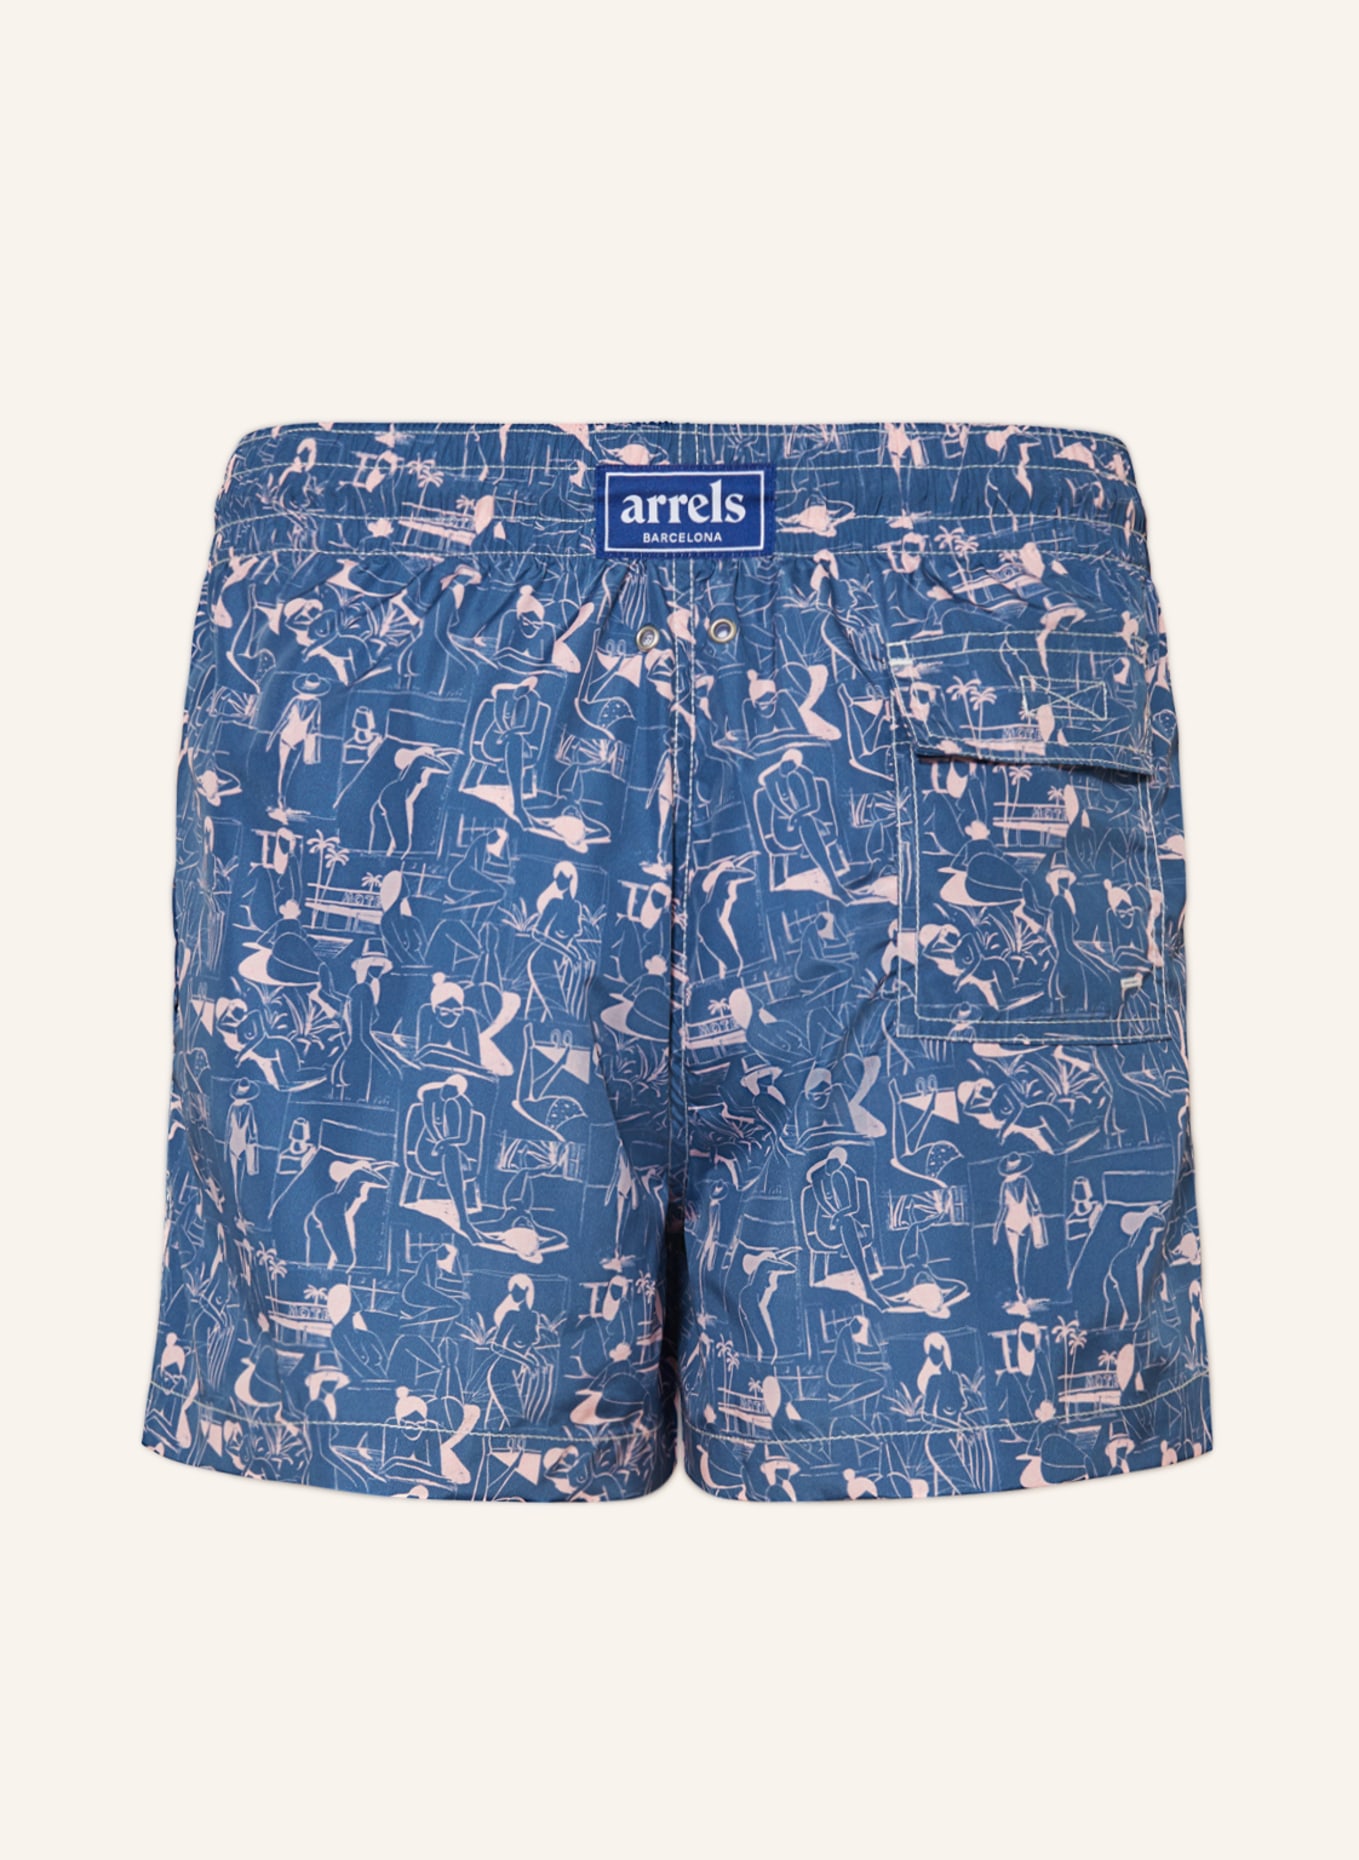 arrels BARCELONA Swim shorts BLUE VACANCES × QUENTIN MONGE, Color: BLUE/ PINK (Image 2)